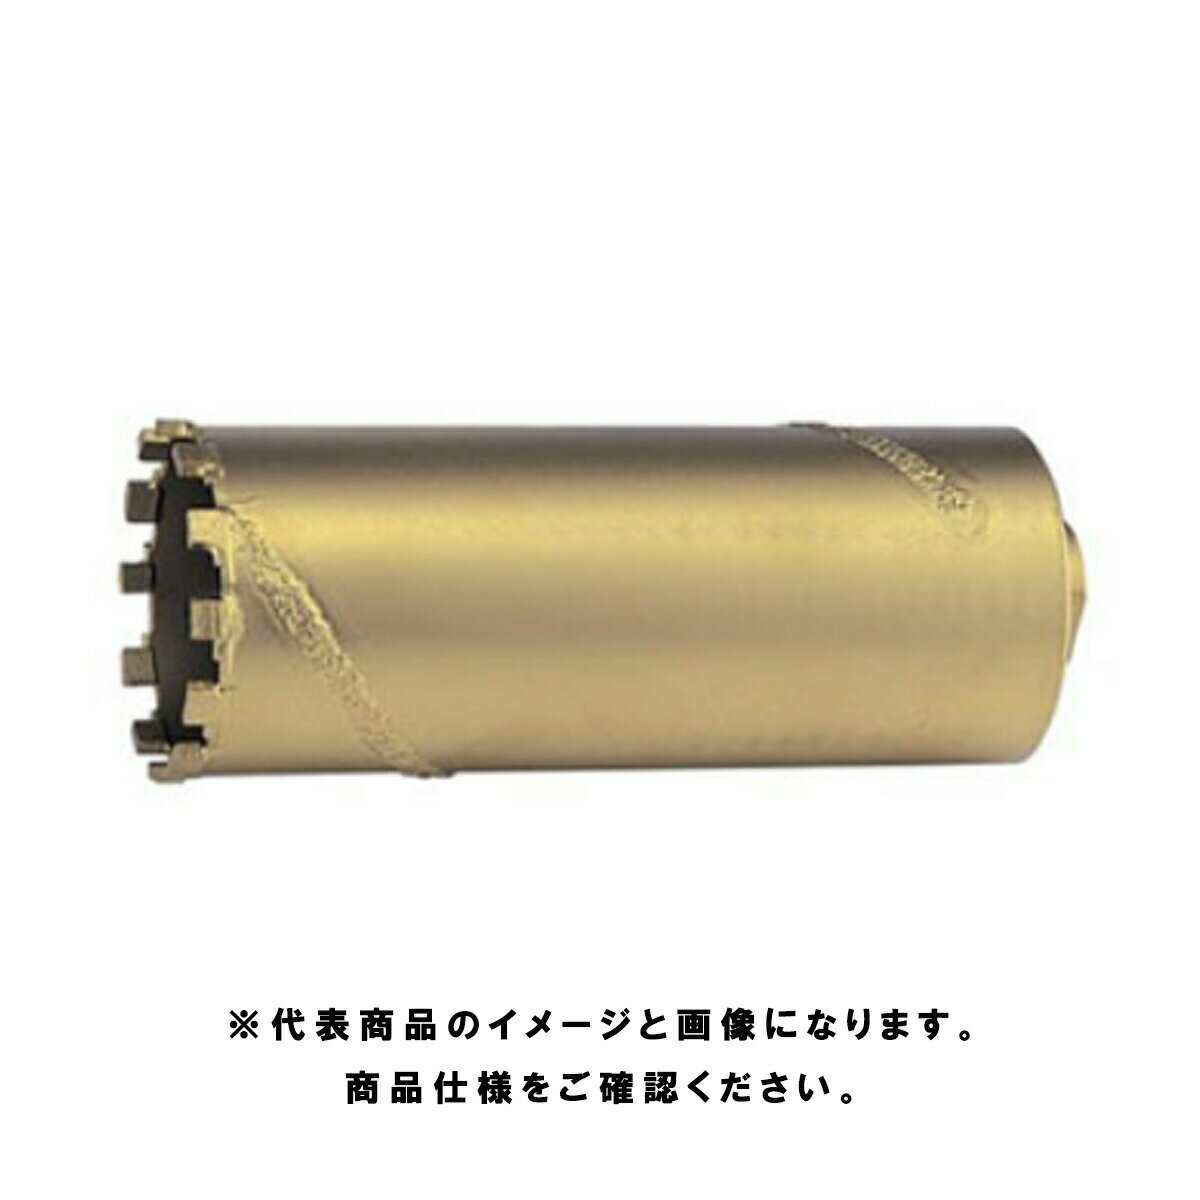 マキタ(makita) 乾式ダイヤモンドコアビット 38mm A-13172 コアビット単品